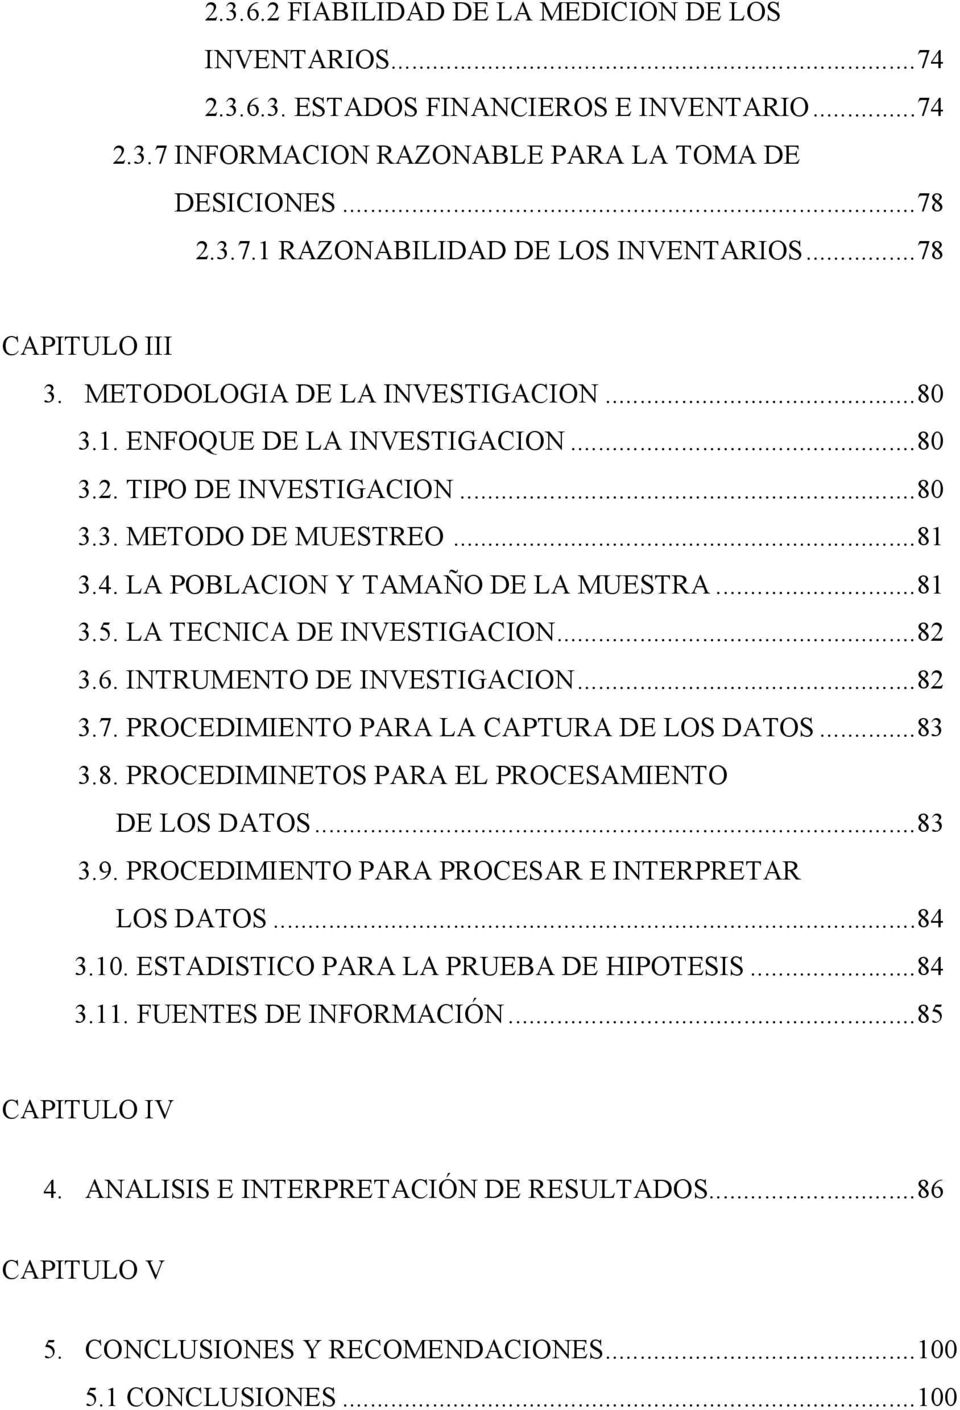 LA POBLACION Y TAMAÑO DE LA MUESTRA... 81 3.5. LA TECNICA DE INVESTIGACION... 82 3.6. INTRUMENTO DE INVESTIGACION... 82 3.7. PROCEDIMIENTO PARA LA CAPTURA DE LOS DATOS... 83 3.8. PROCEDIMINETOS PARA EL PROCESAMIENTO DE LOS DATOS.